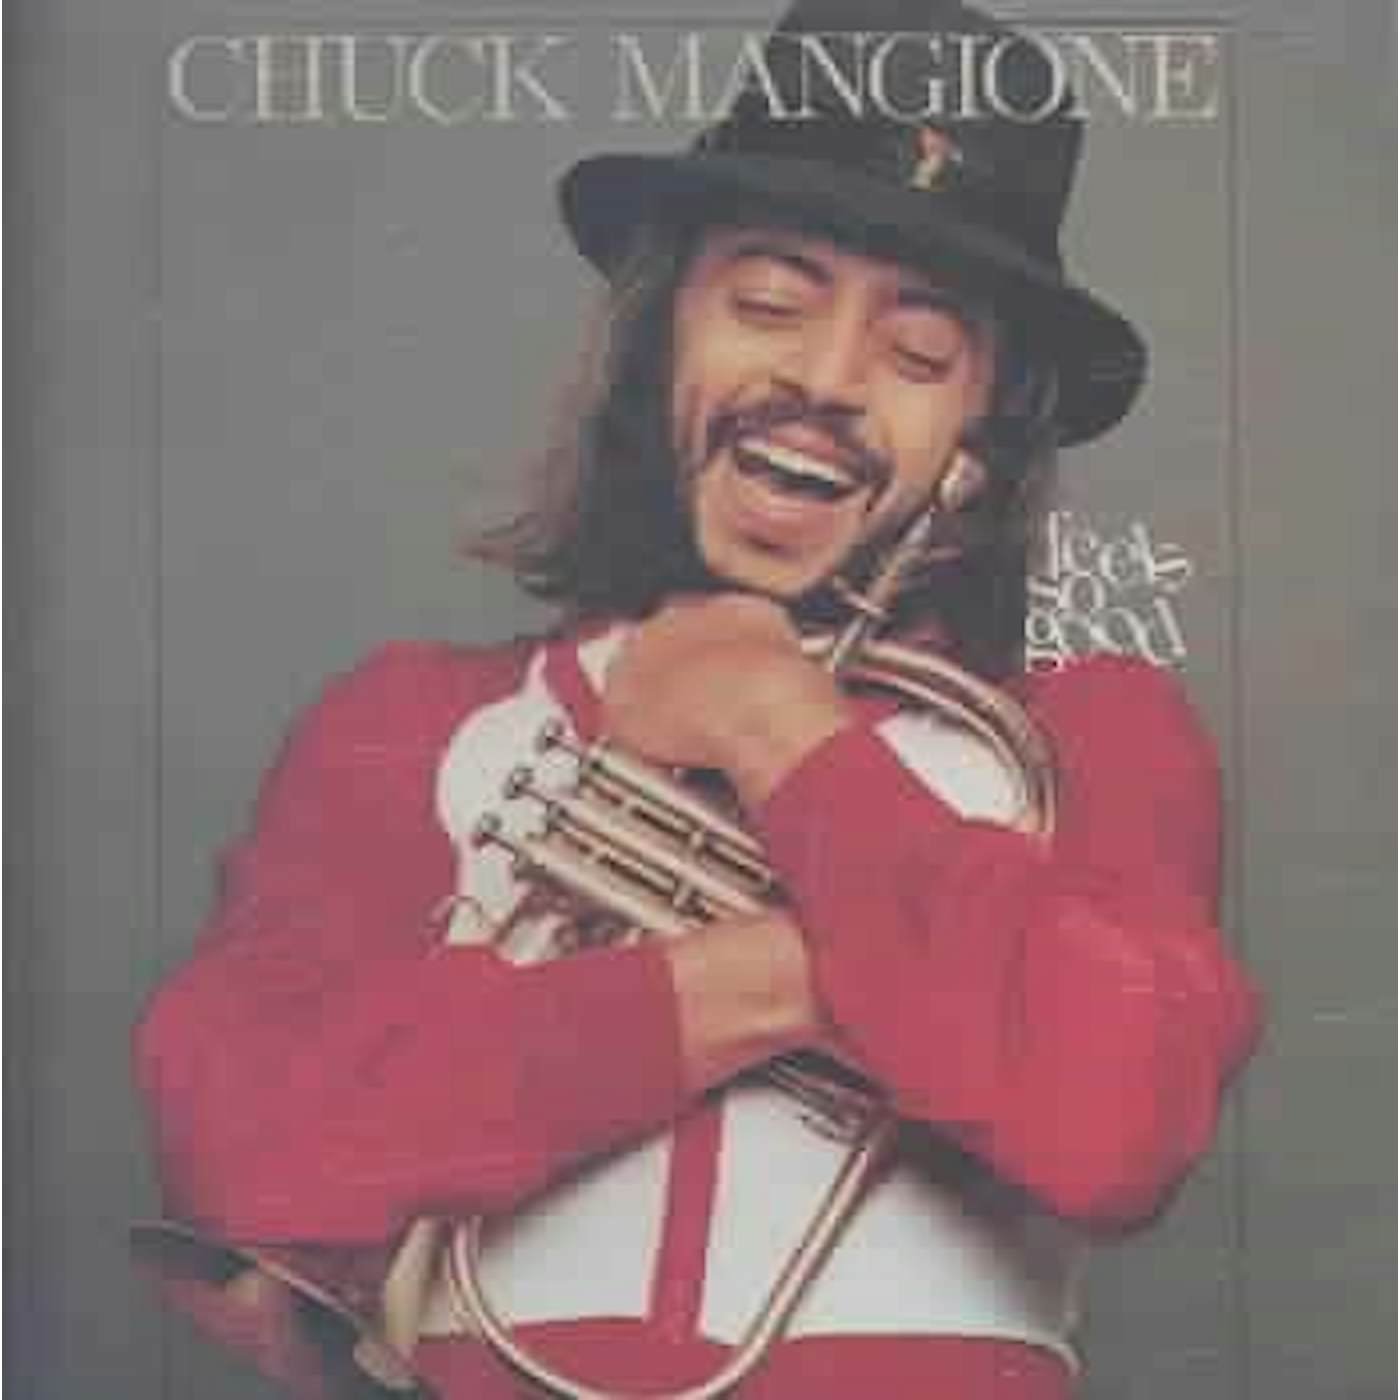 Chuck Mangione Feels So Good CD